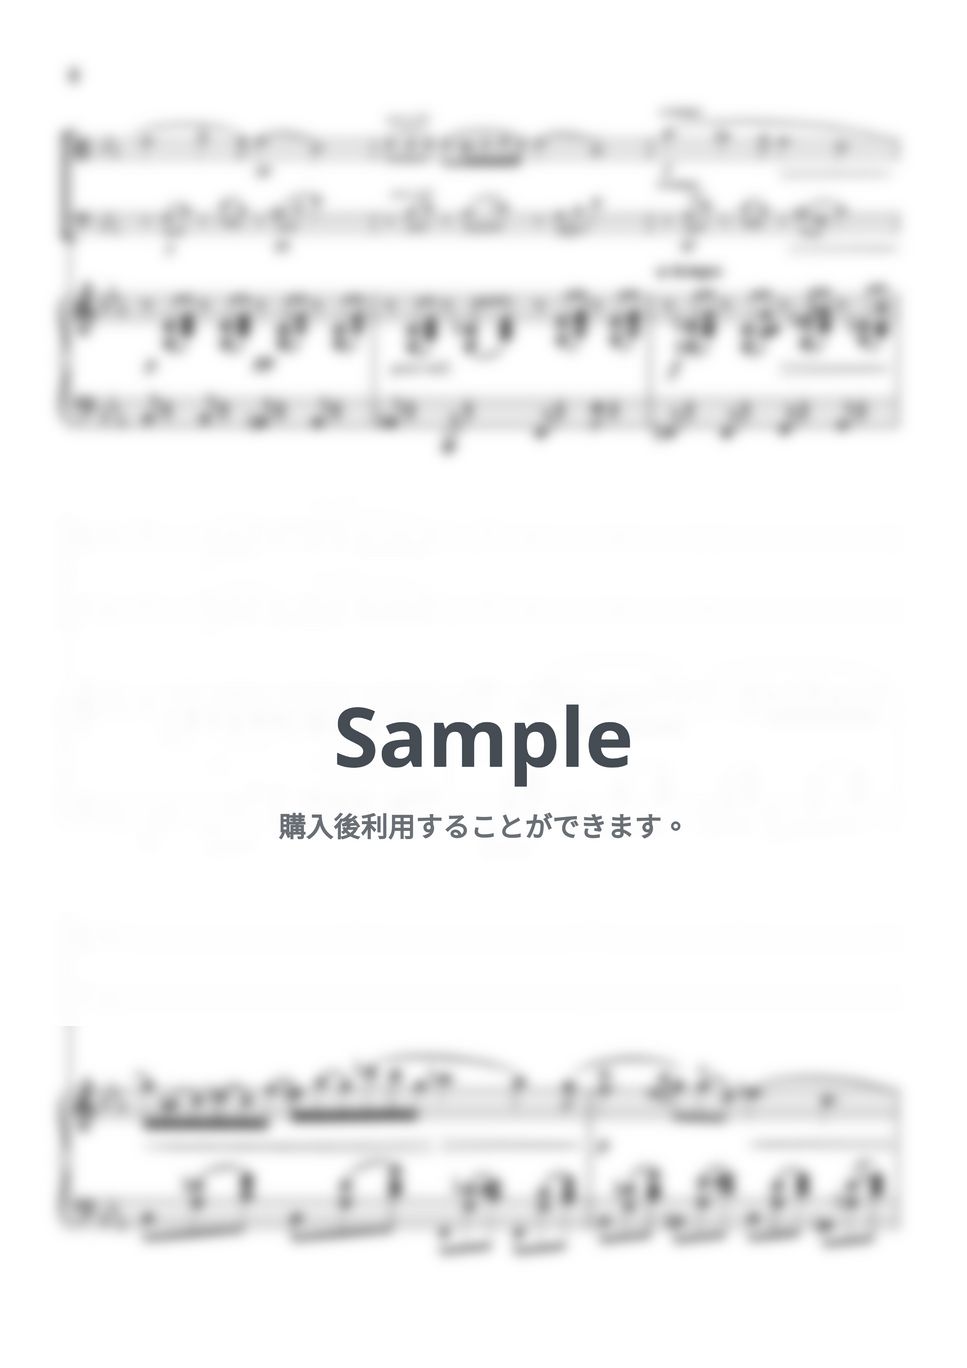 ショパン - ノクターン第2番 (ピアノトリオ/ヴィオラ&チェロ) by pfkaori